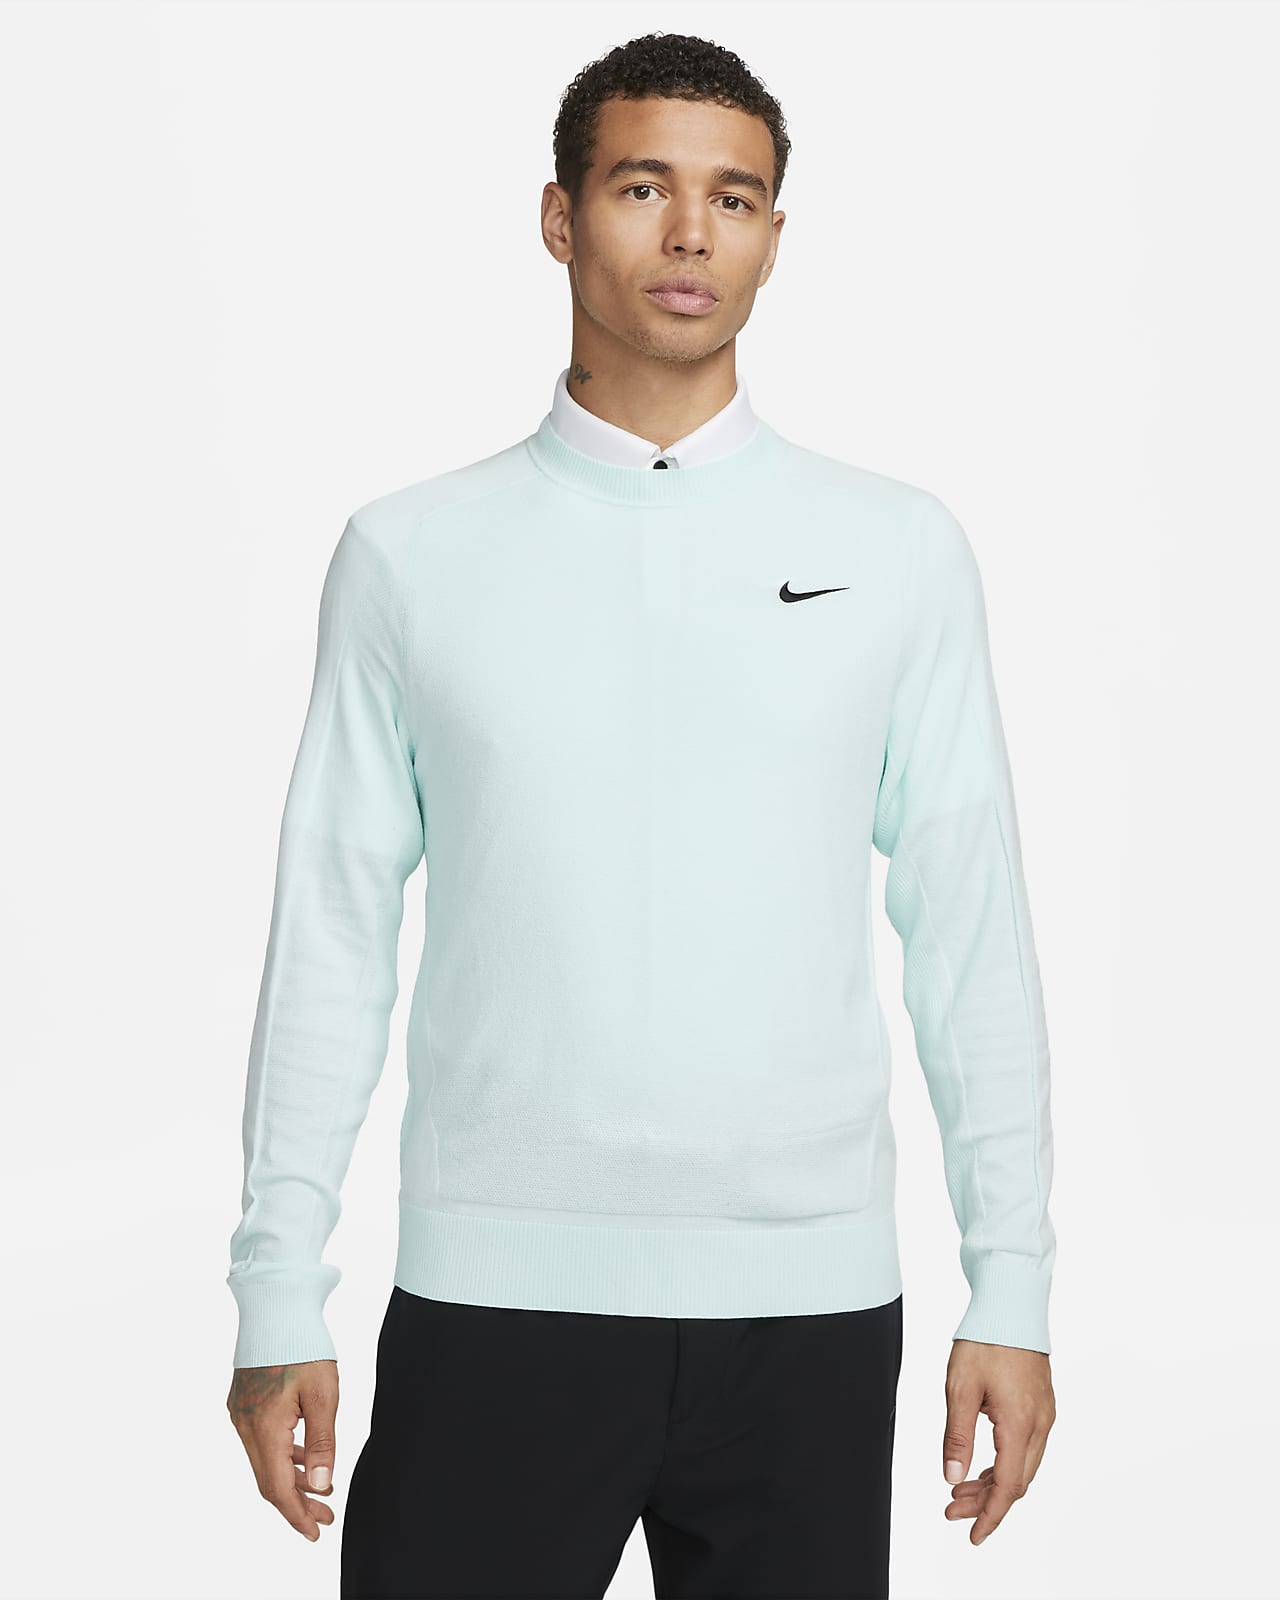 Bliv Kunde tyve Tiger Woods Men's Knit Golf Sweater. Nike.com